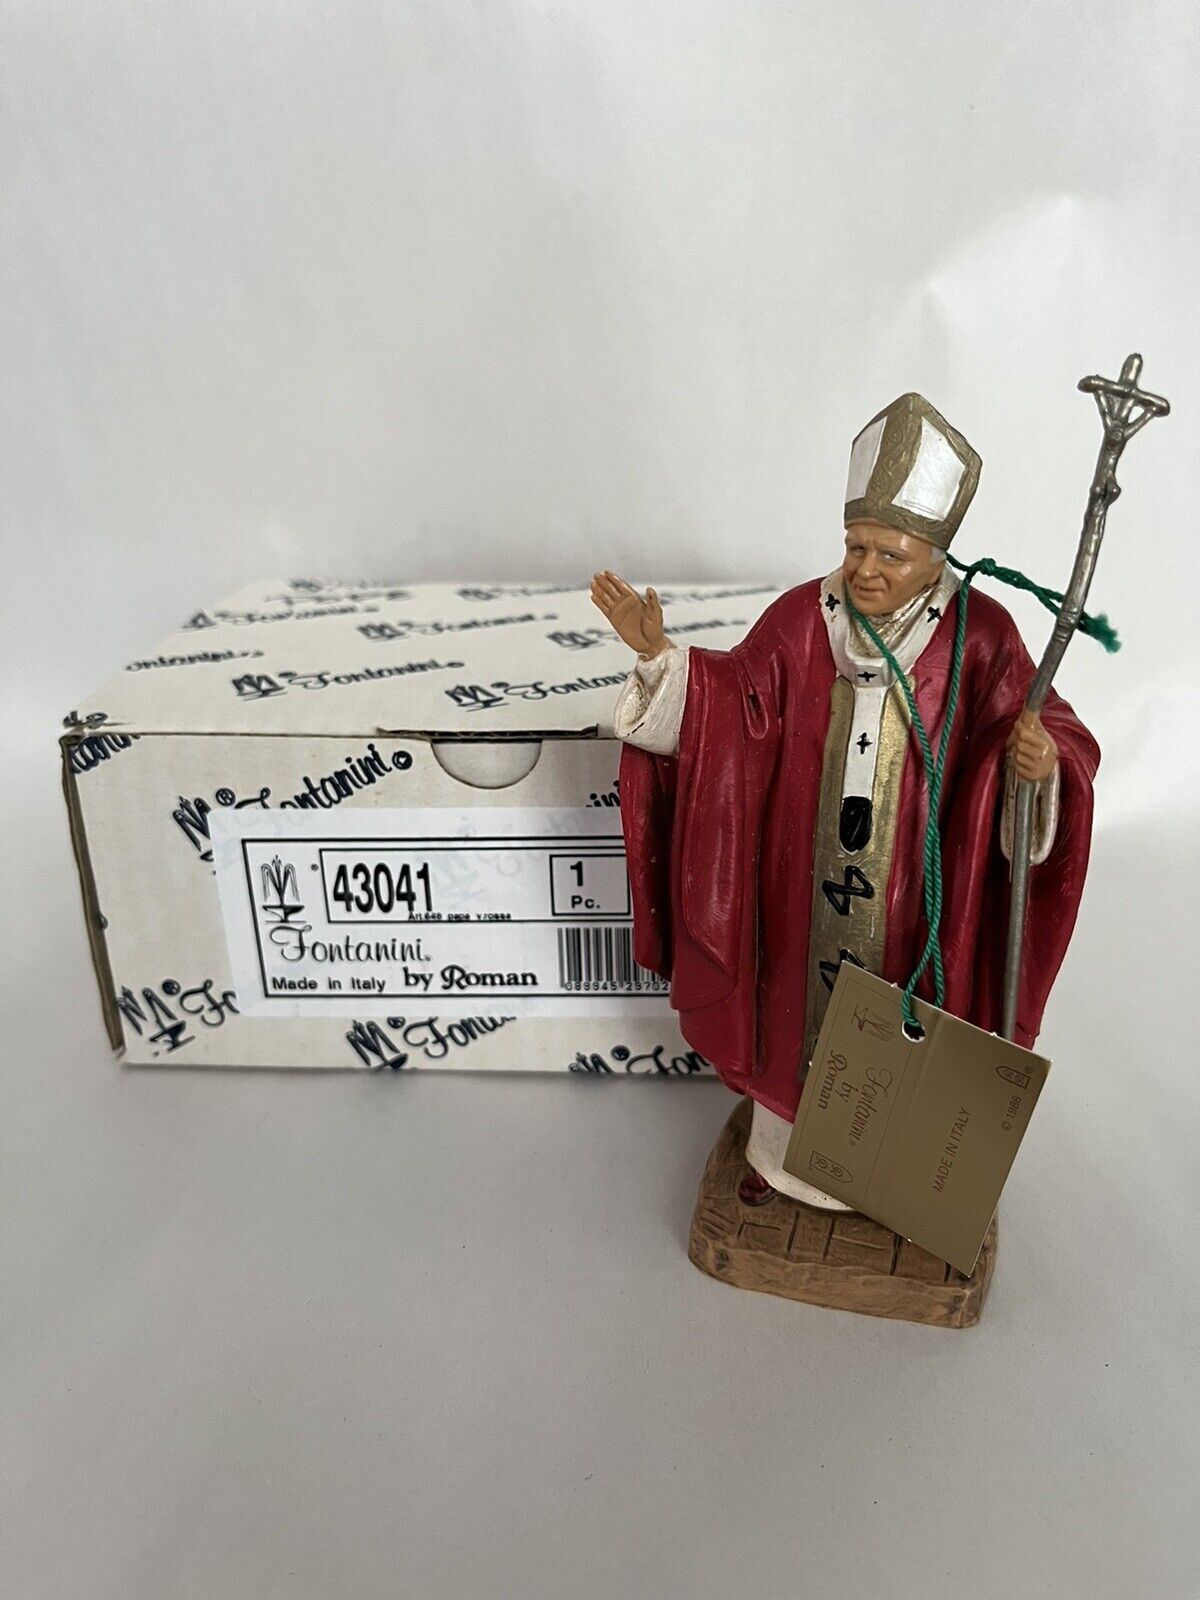 Fontanini Pope John Paul II 5 Inch Scale Figure Roman # 43041 New with box